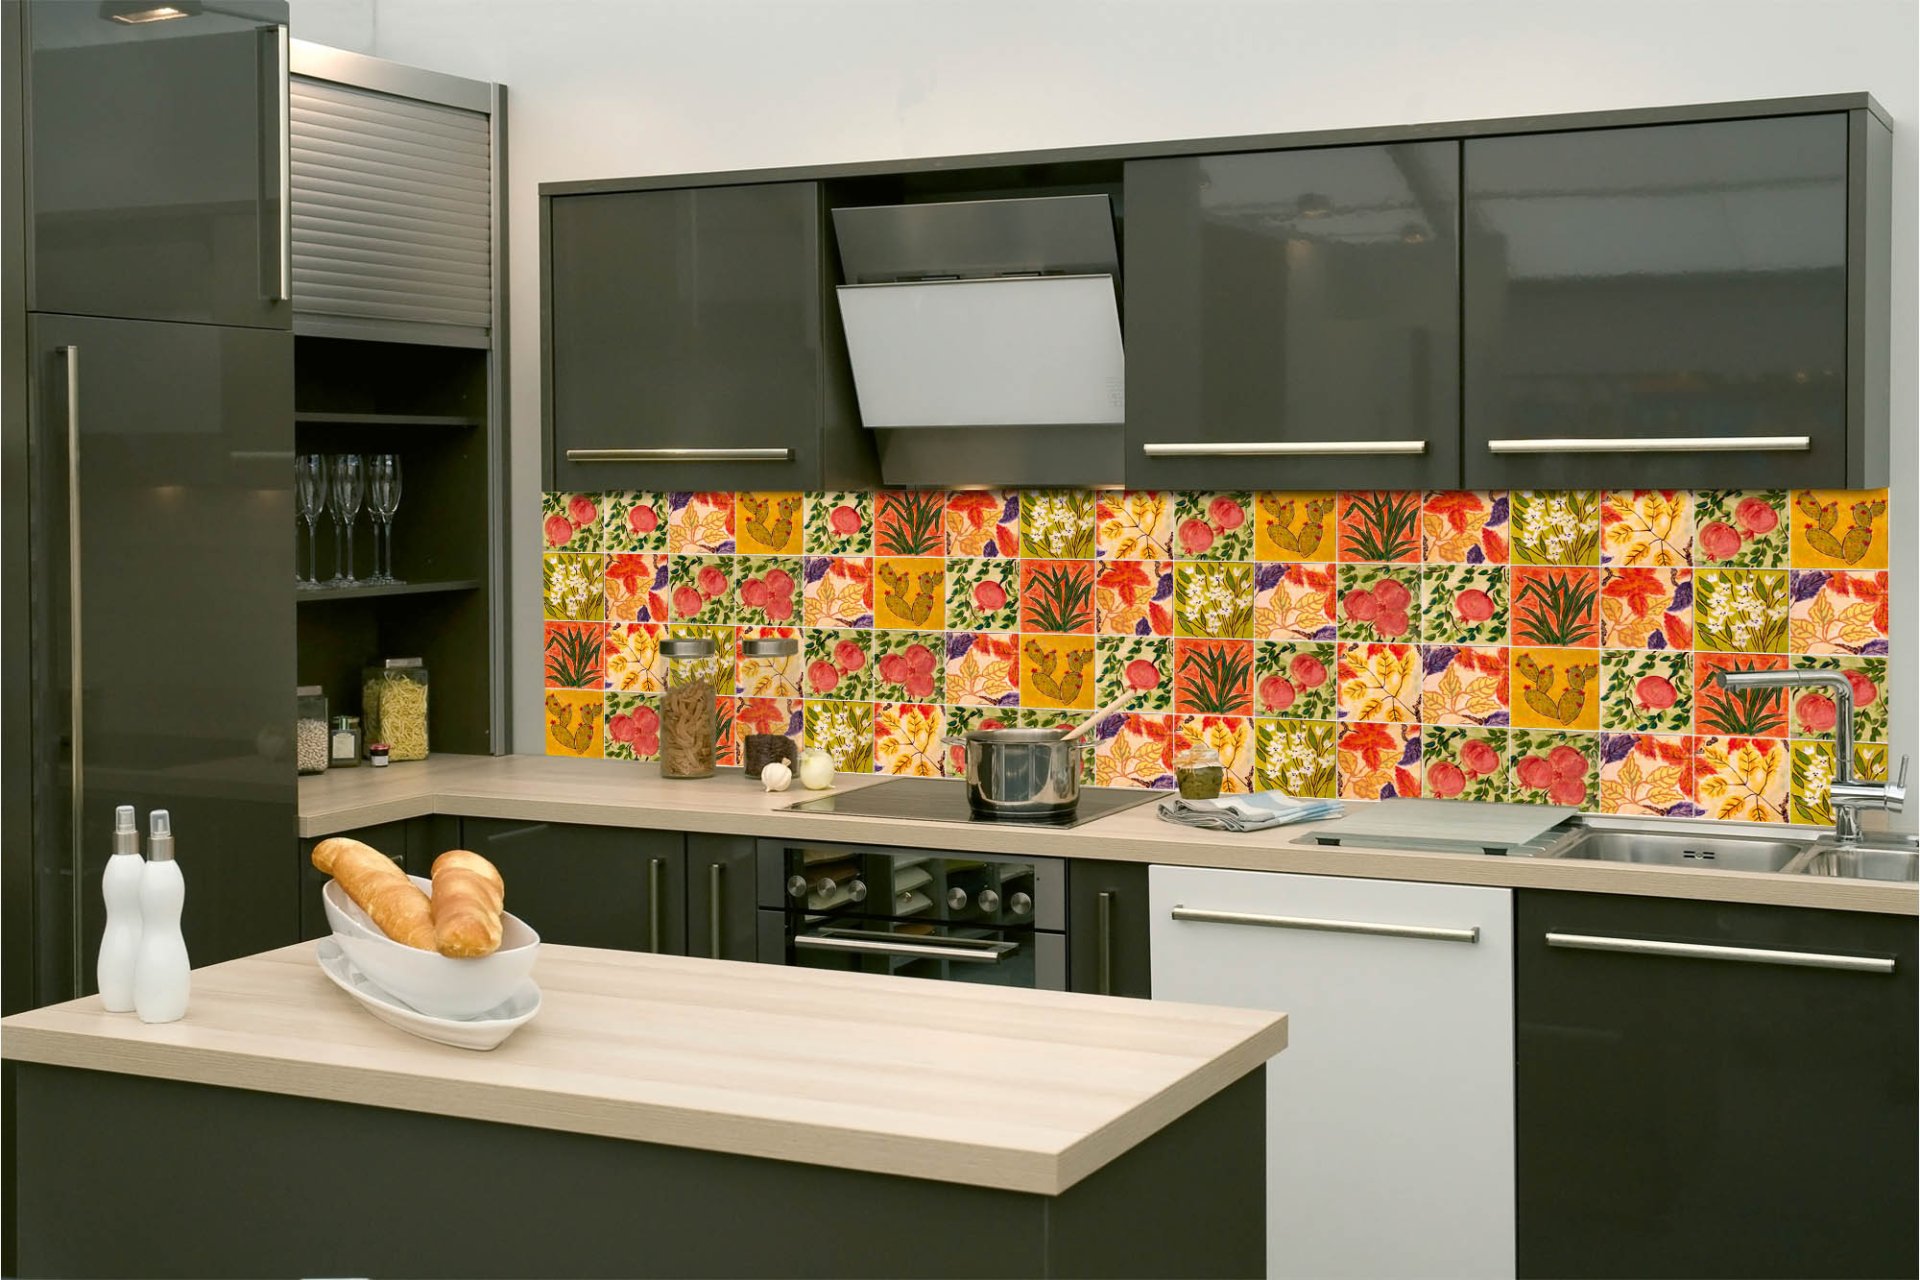 Samolepicí fototapeta na kuchyňskou linku Malované kachličky 260 x 60 cm / KI-260-166/ Fototapety do kuchyně Dimex